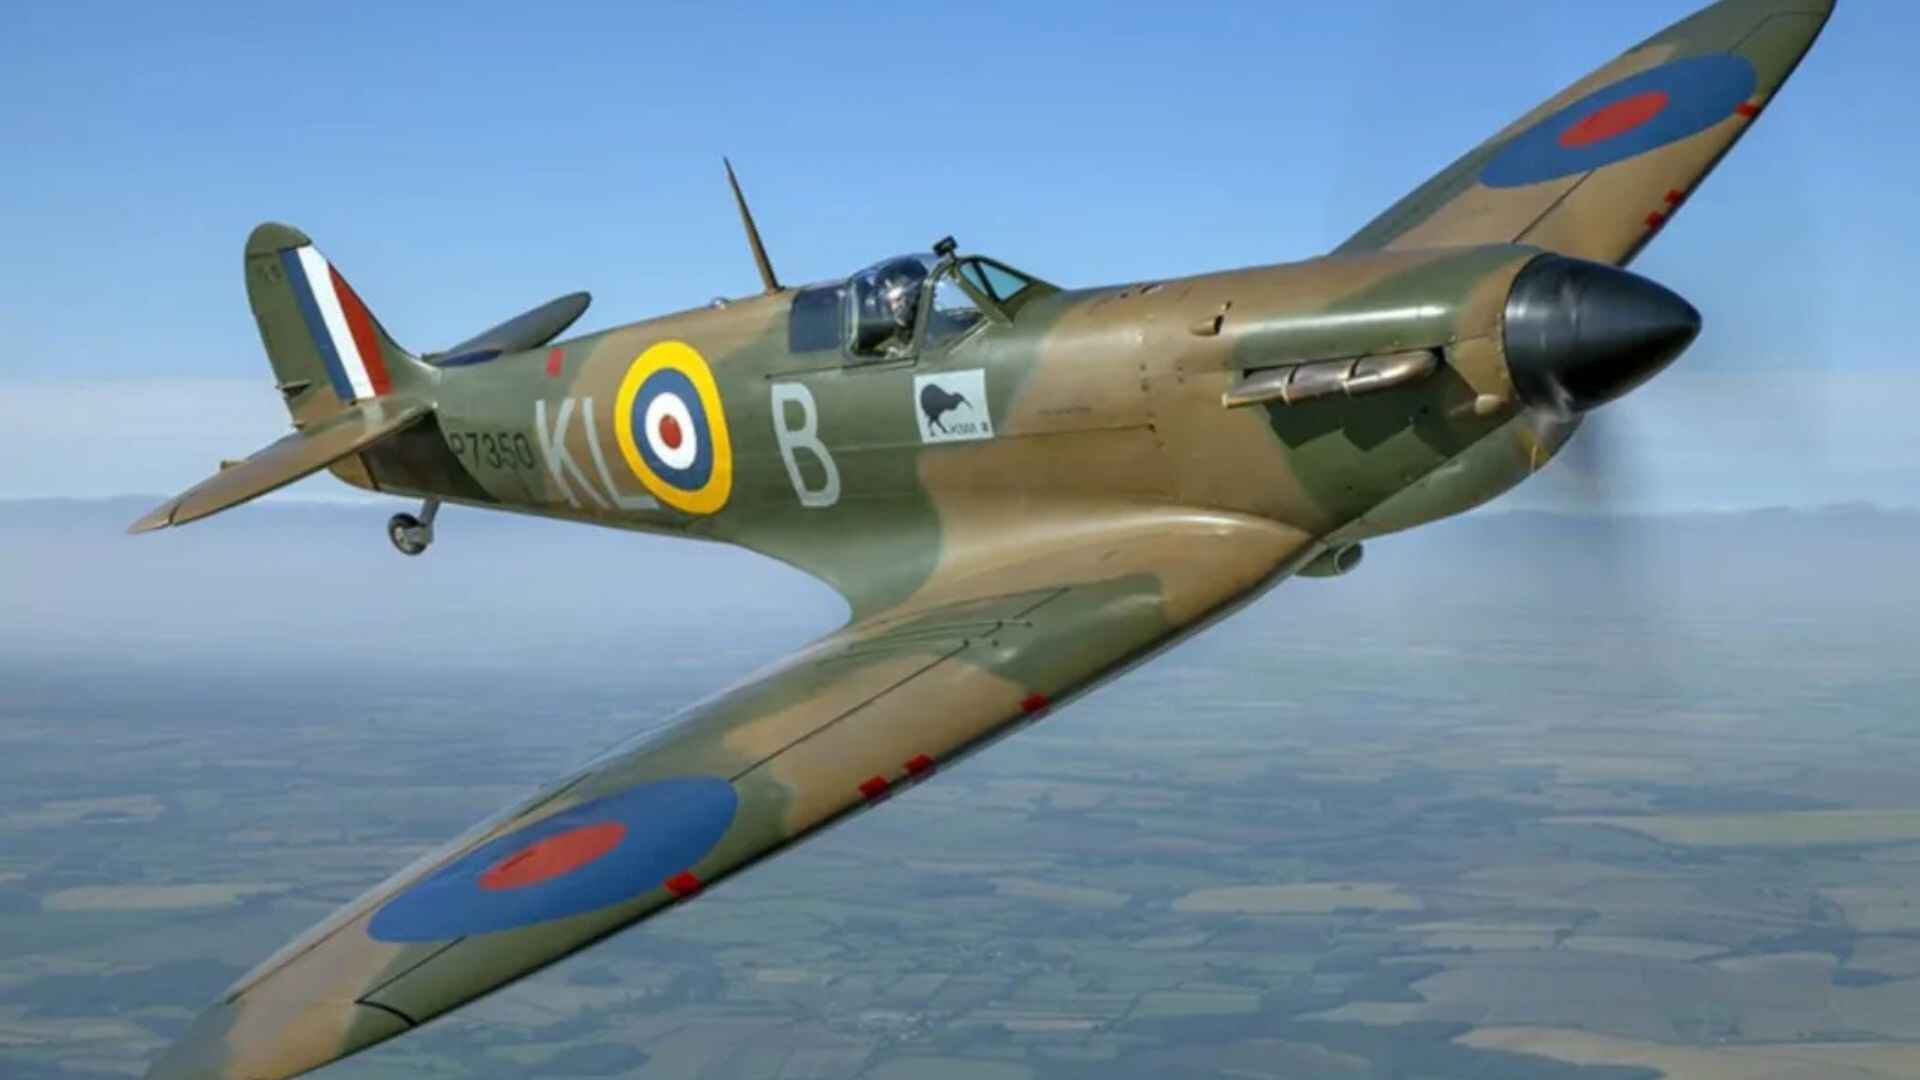 England: RAF Pilot Killed In Crash Of WWII-Era Spitfire